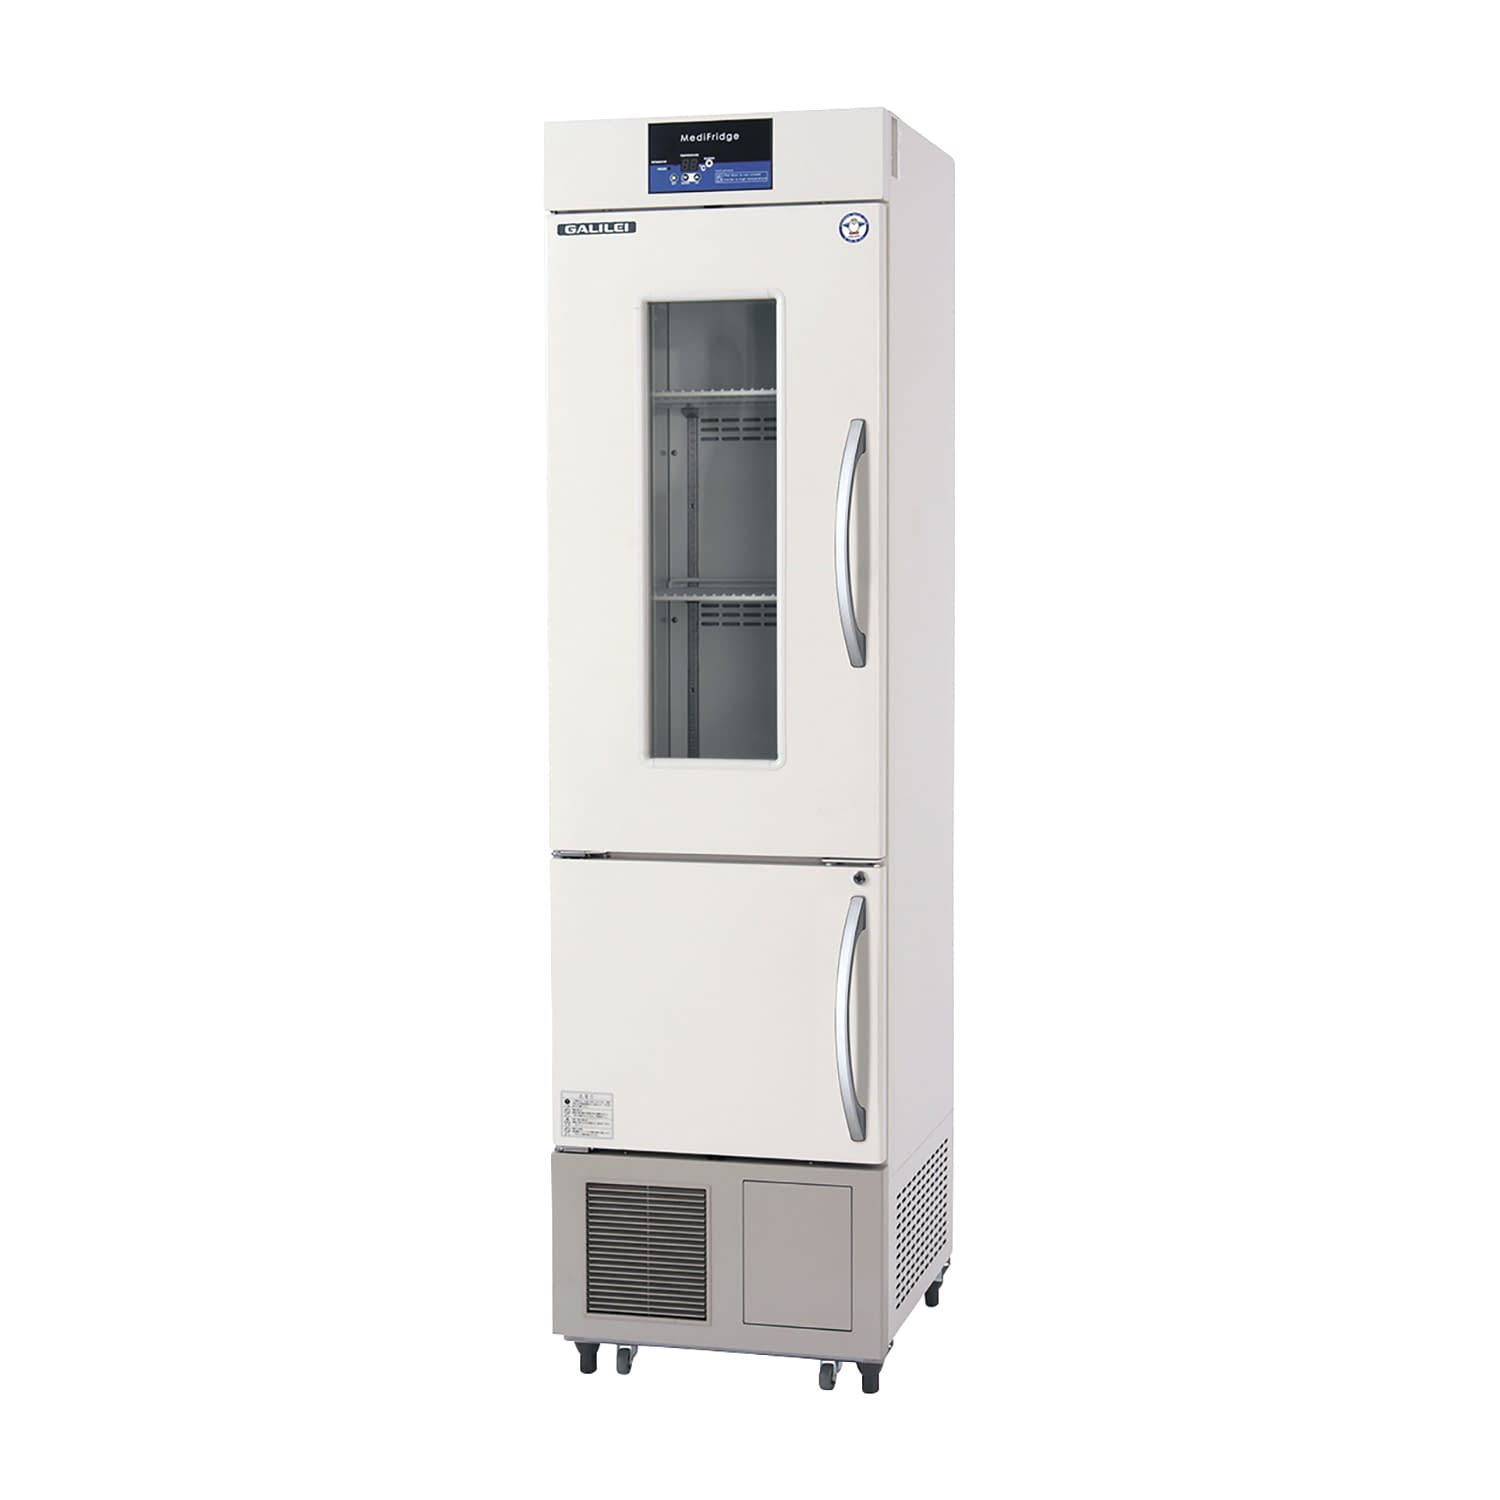 薬用冷凍冷蔵庫 FMS-F405GX(176／481L) 1台 フクシマガリレイ アイボリー(標準色) カラーピンク25-5515-0203 保冷庫 検査室 薬用保冷庫